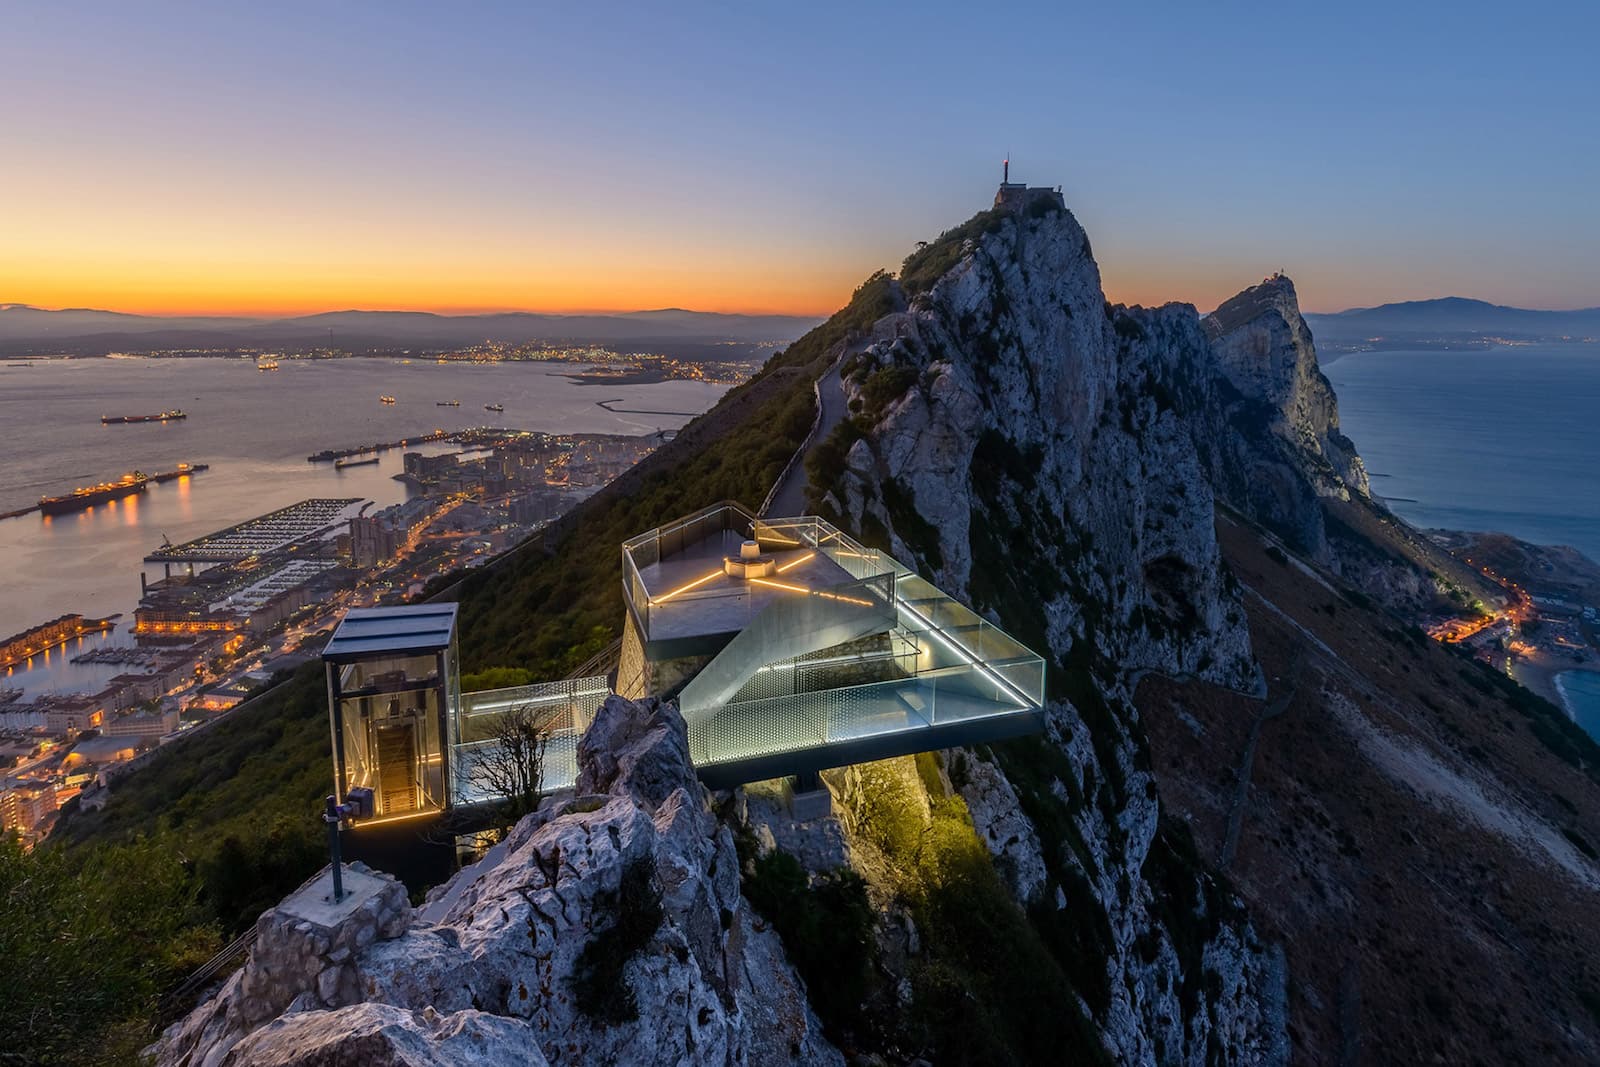 Skywalk Gibraltar by Arc Designs featured